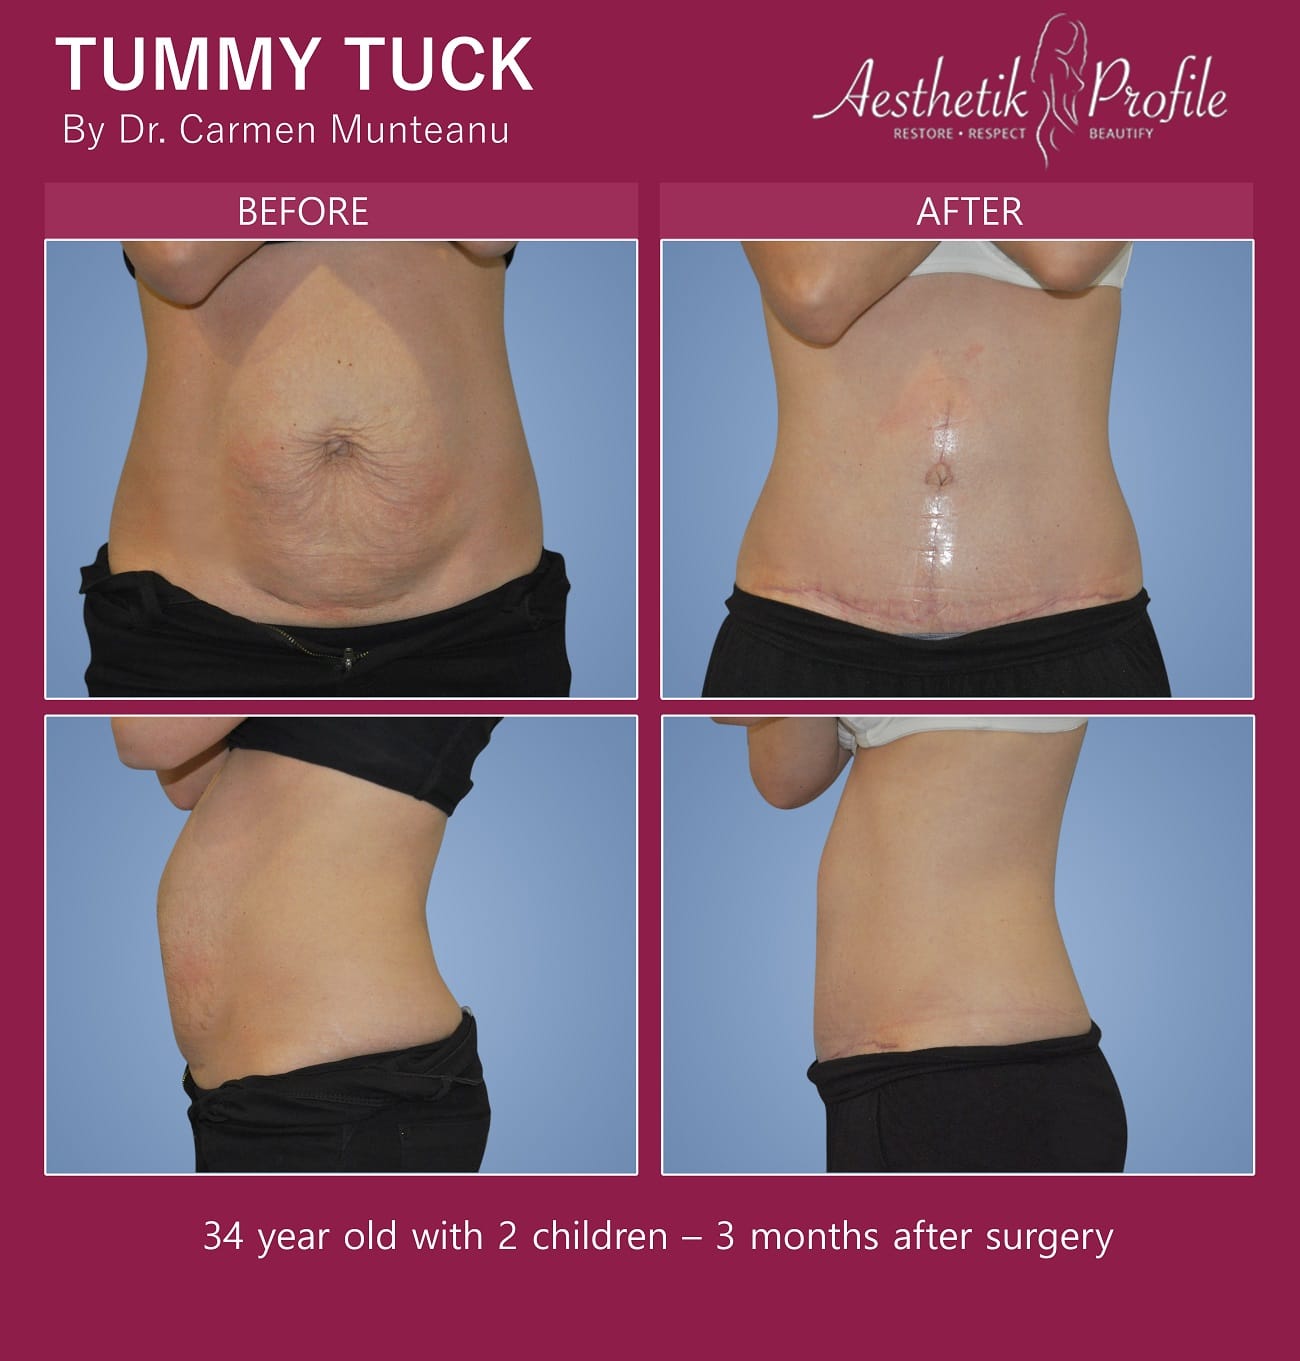 Fleur De lis FDL Abdominoplasty Before and After Photos - Dr Carmen Munteanu - Best Tummy Tuck Surgeon Melbourne